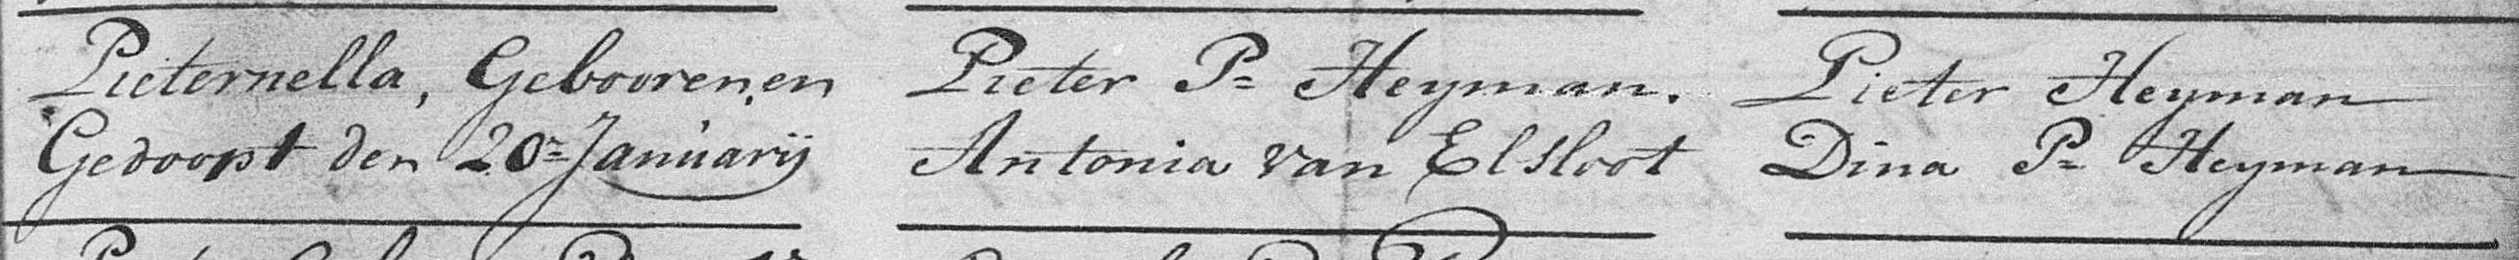 Pieternella Heijman 1771 doopboek